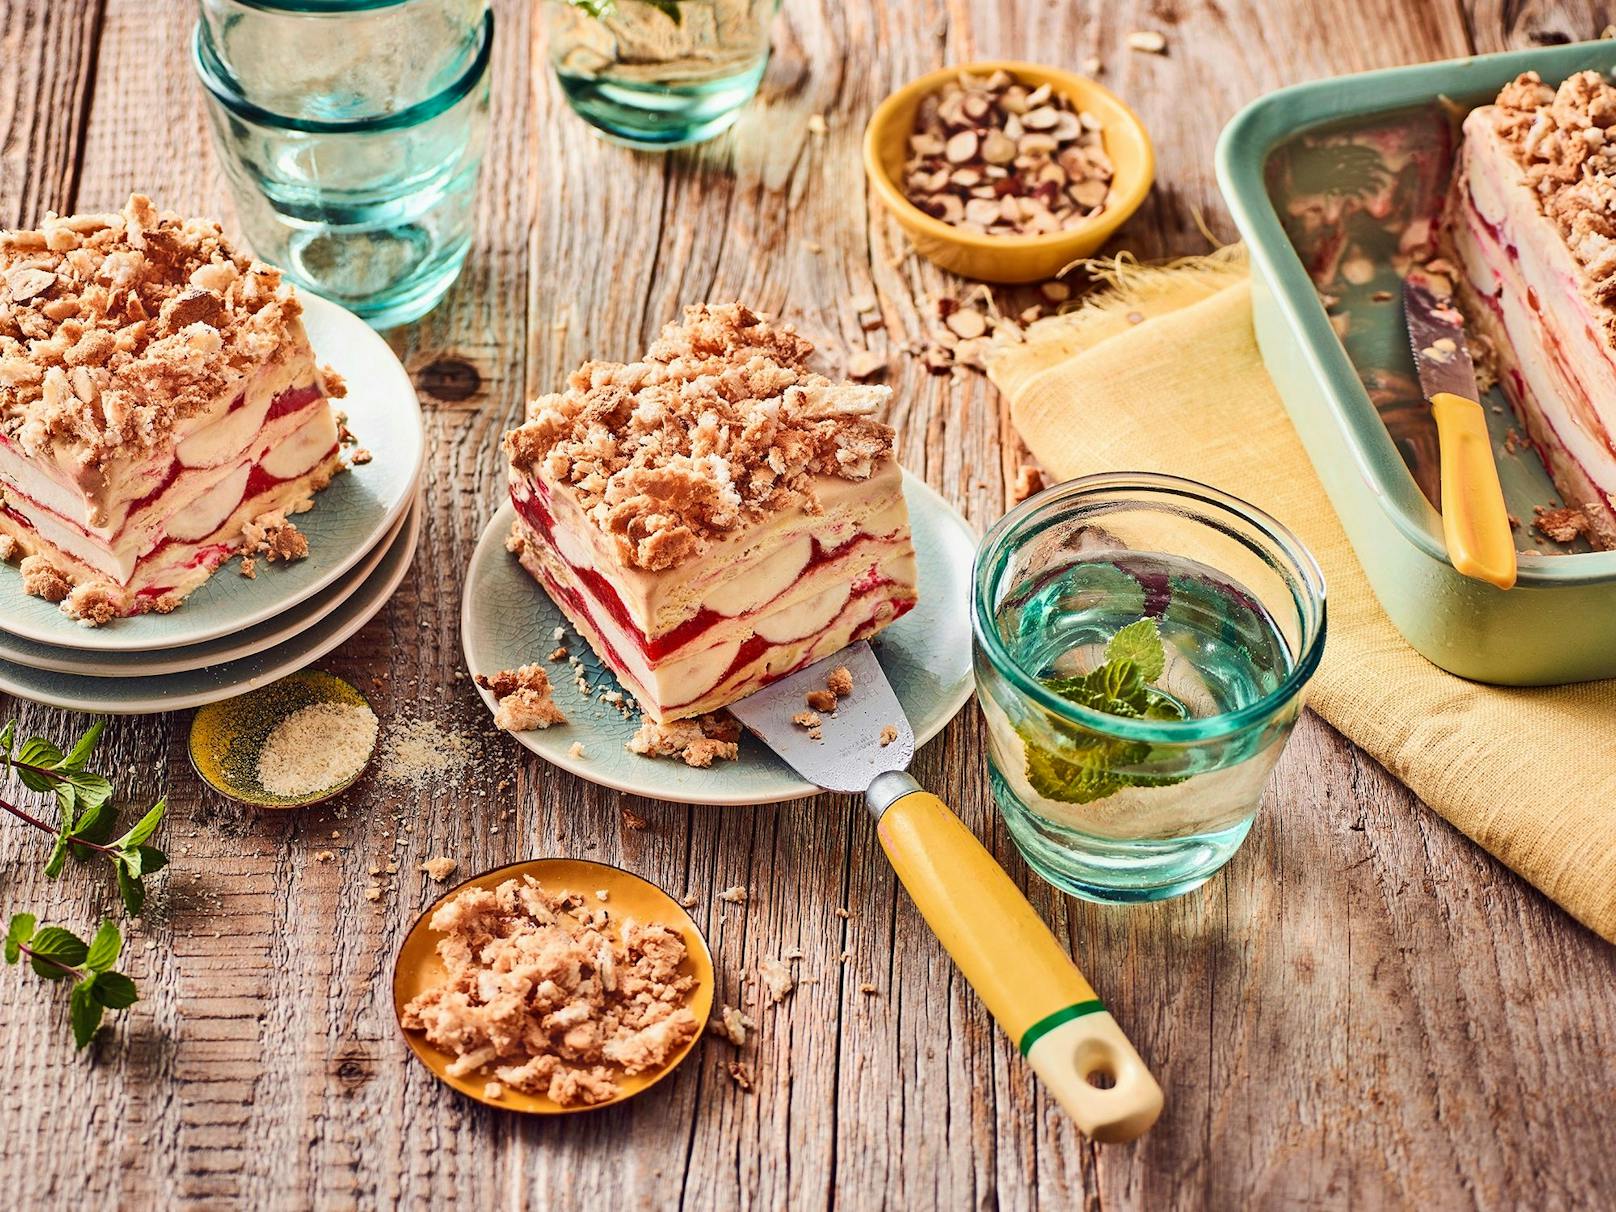 Strawberry Cheesecake Eis, Banane und Erdbeermus genussvoll kombiniert, mit einem speziellen Topping für besonderen Crunch.